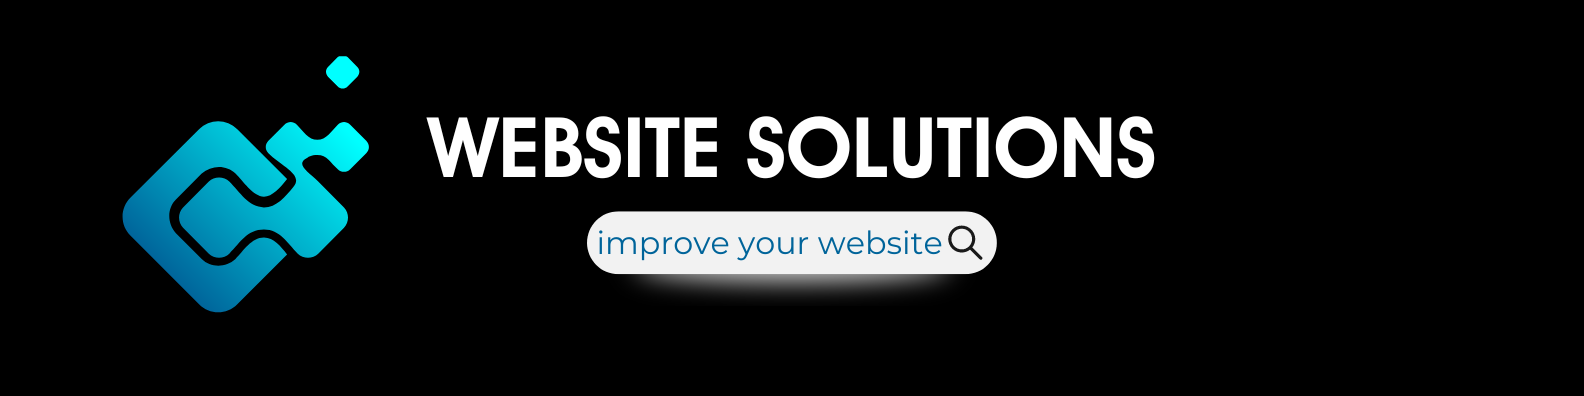 website solutions logo 